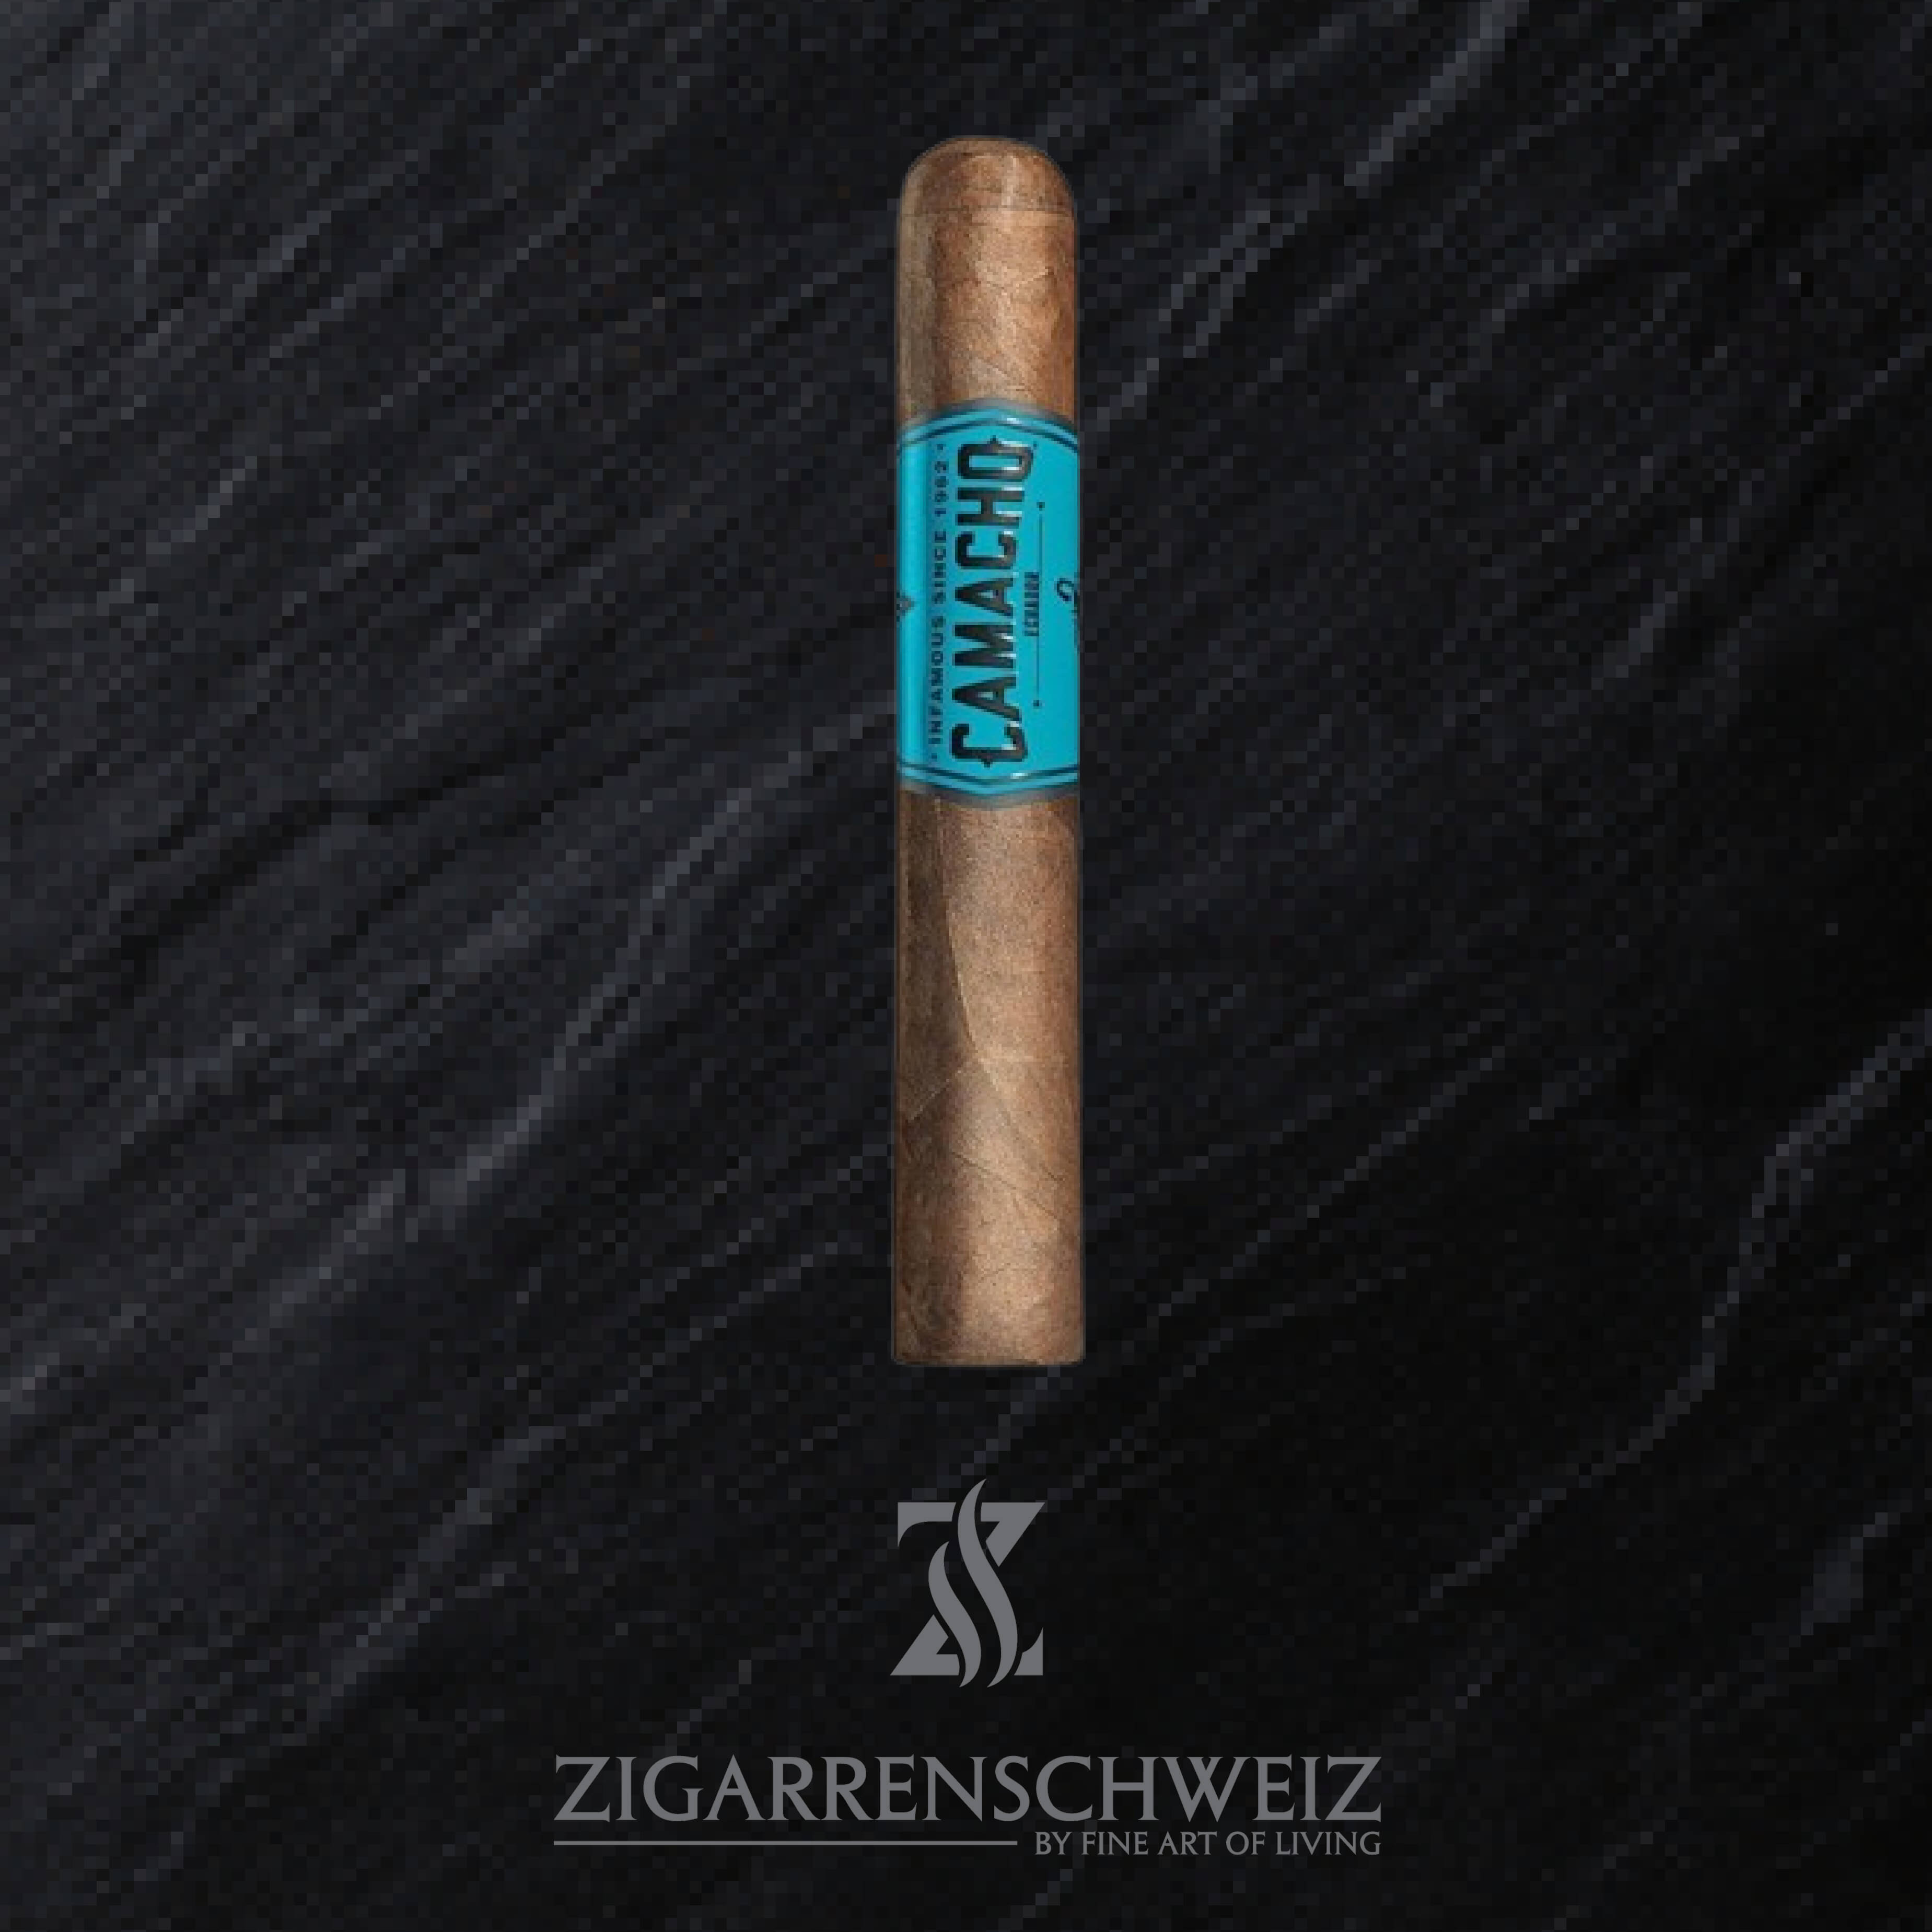 Camacho Ecuador Gordo Zigarren Schweiz